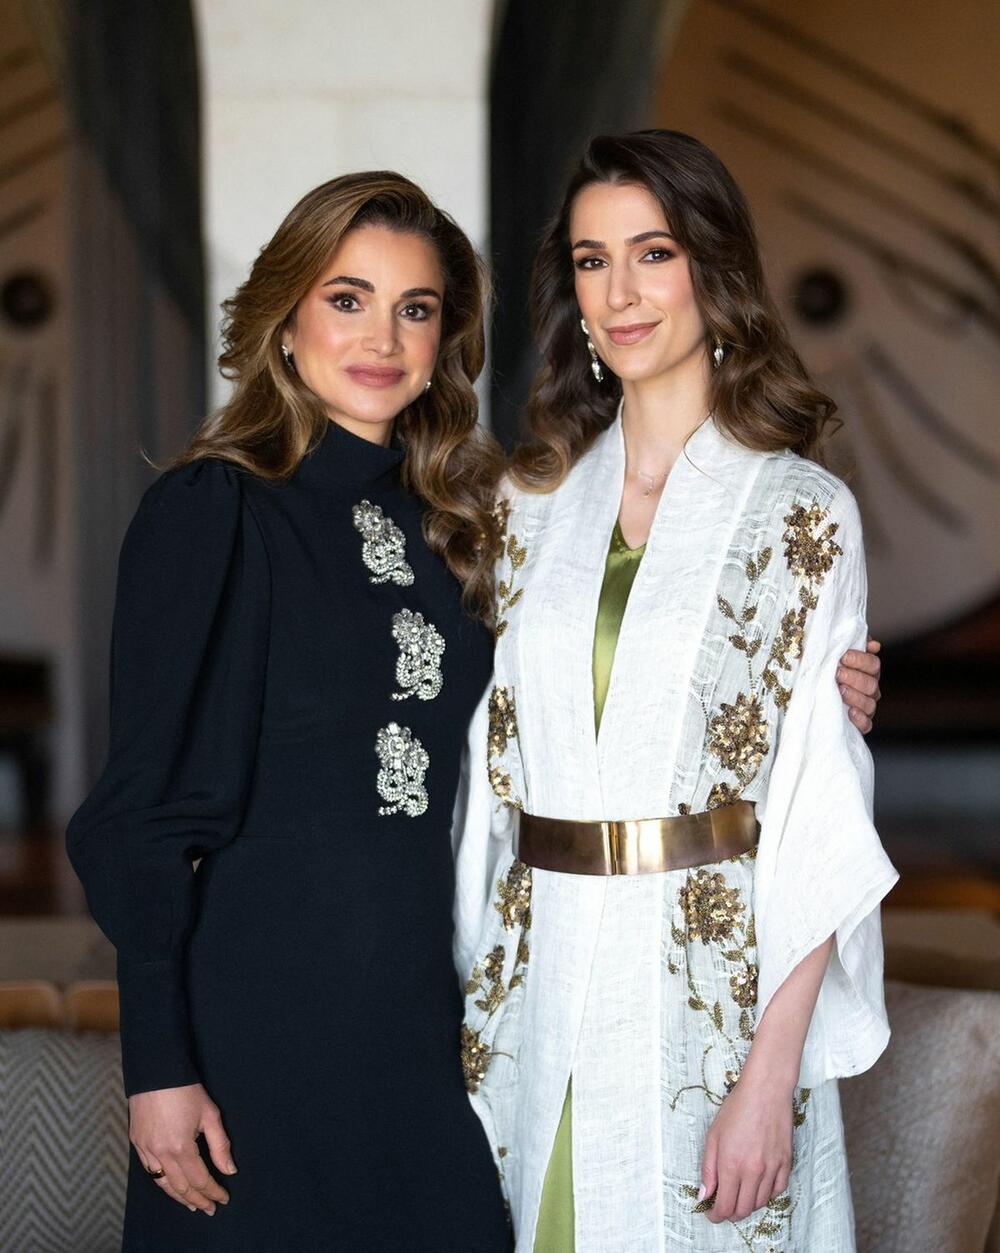 kraljica ranija i princeza radžva al saifa opravdano su na vrhu liste kada su u pitanju modni izbori